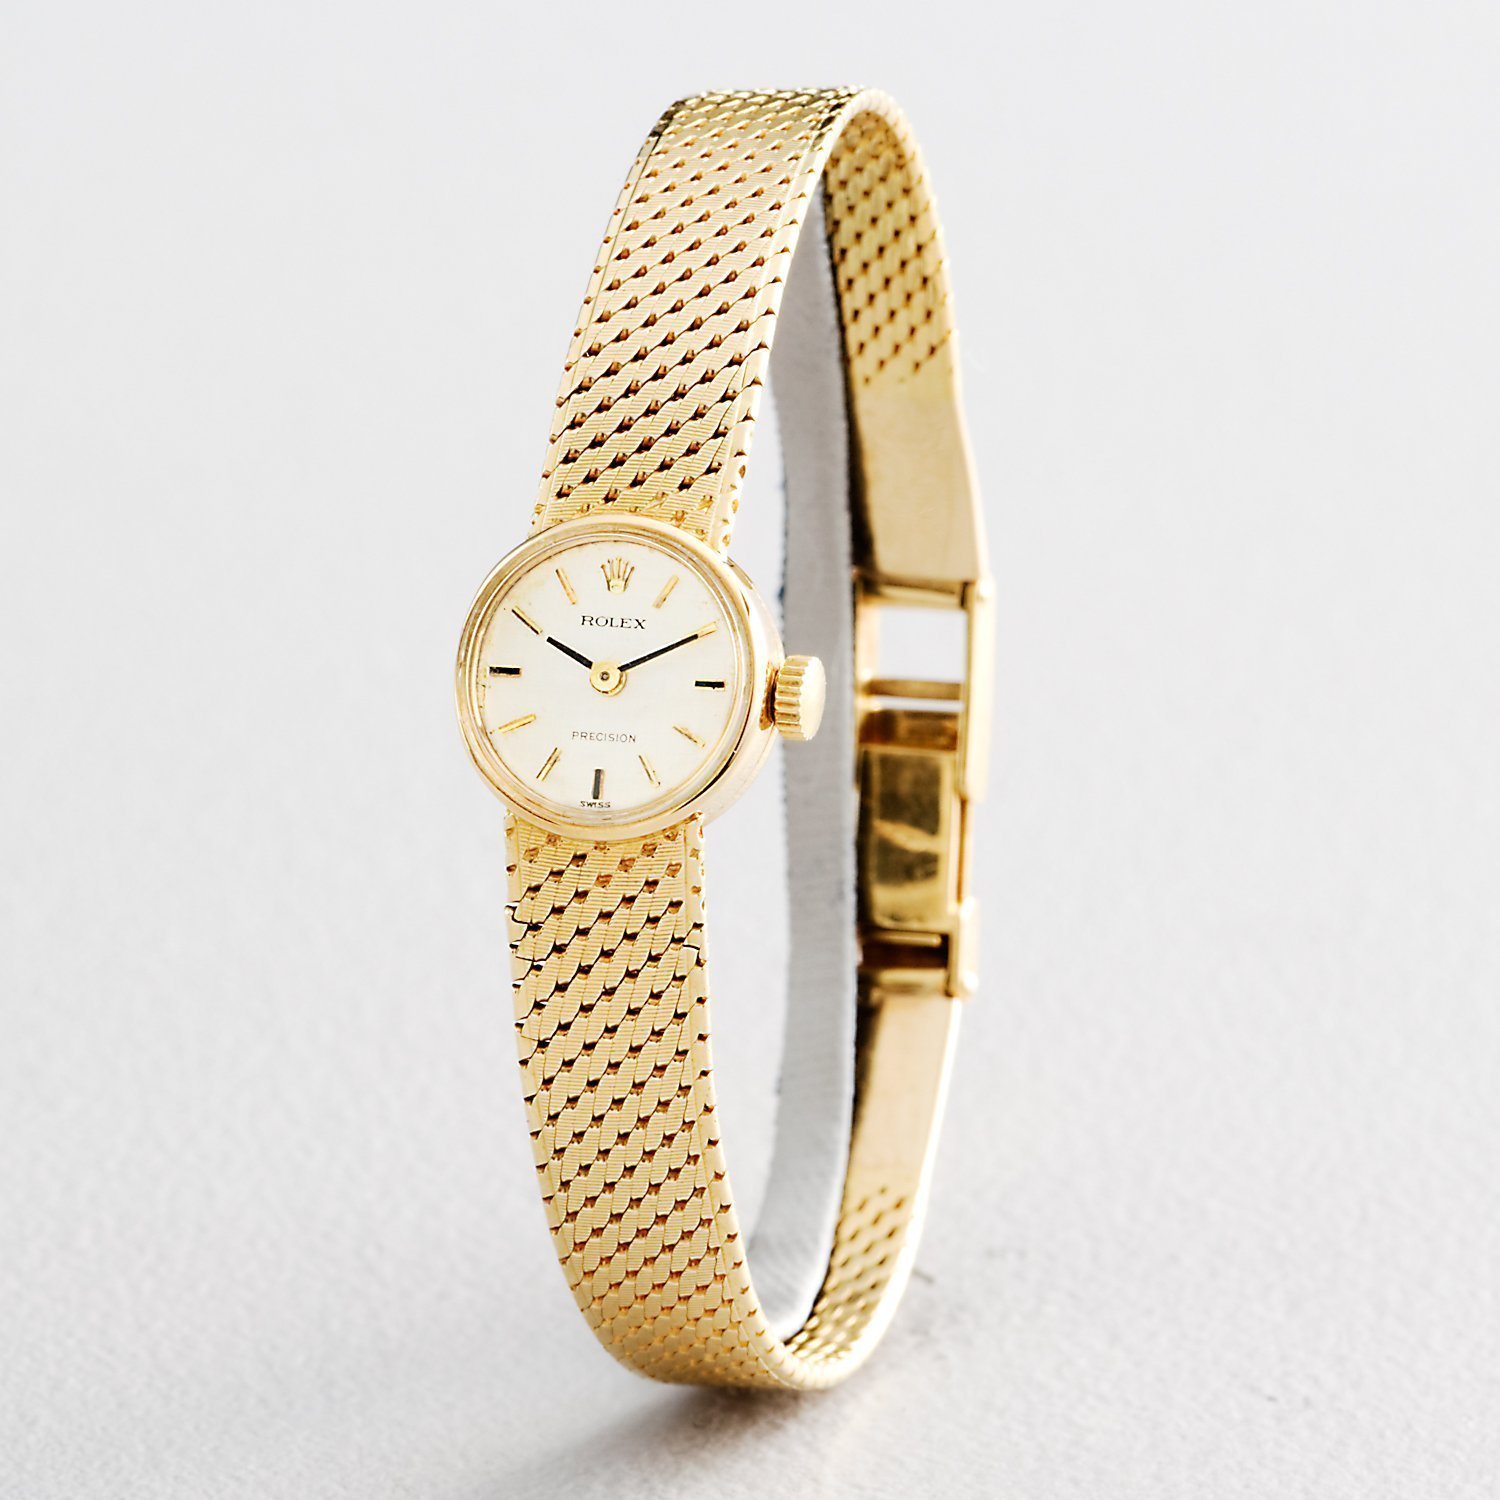 Ladies Rolex Vintage Solid 18K Watch